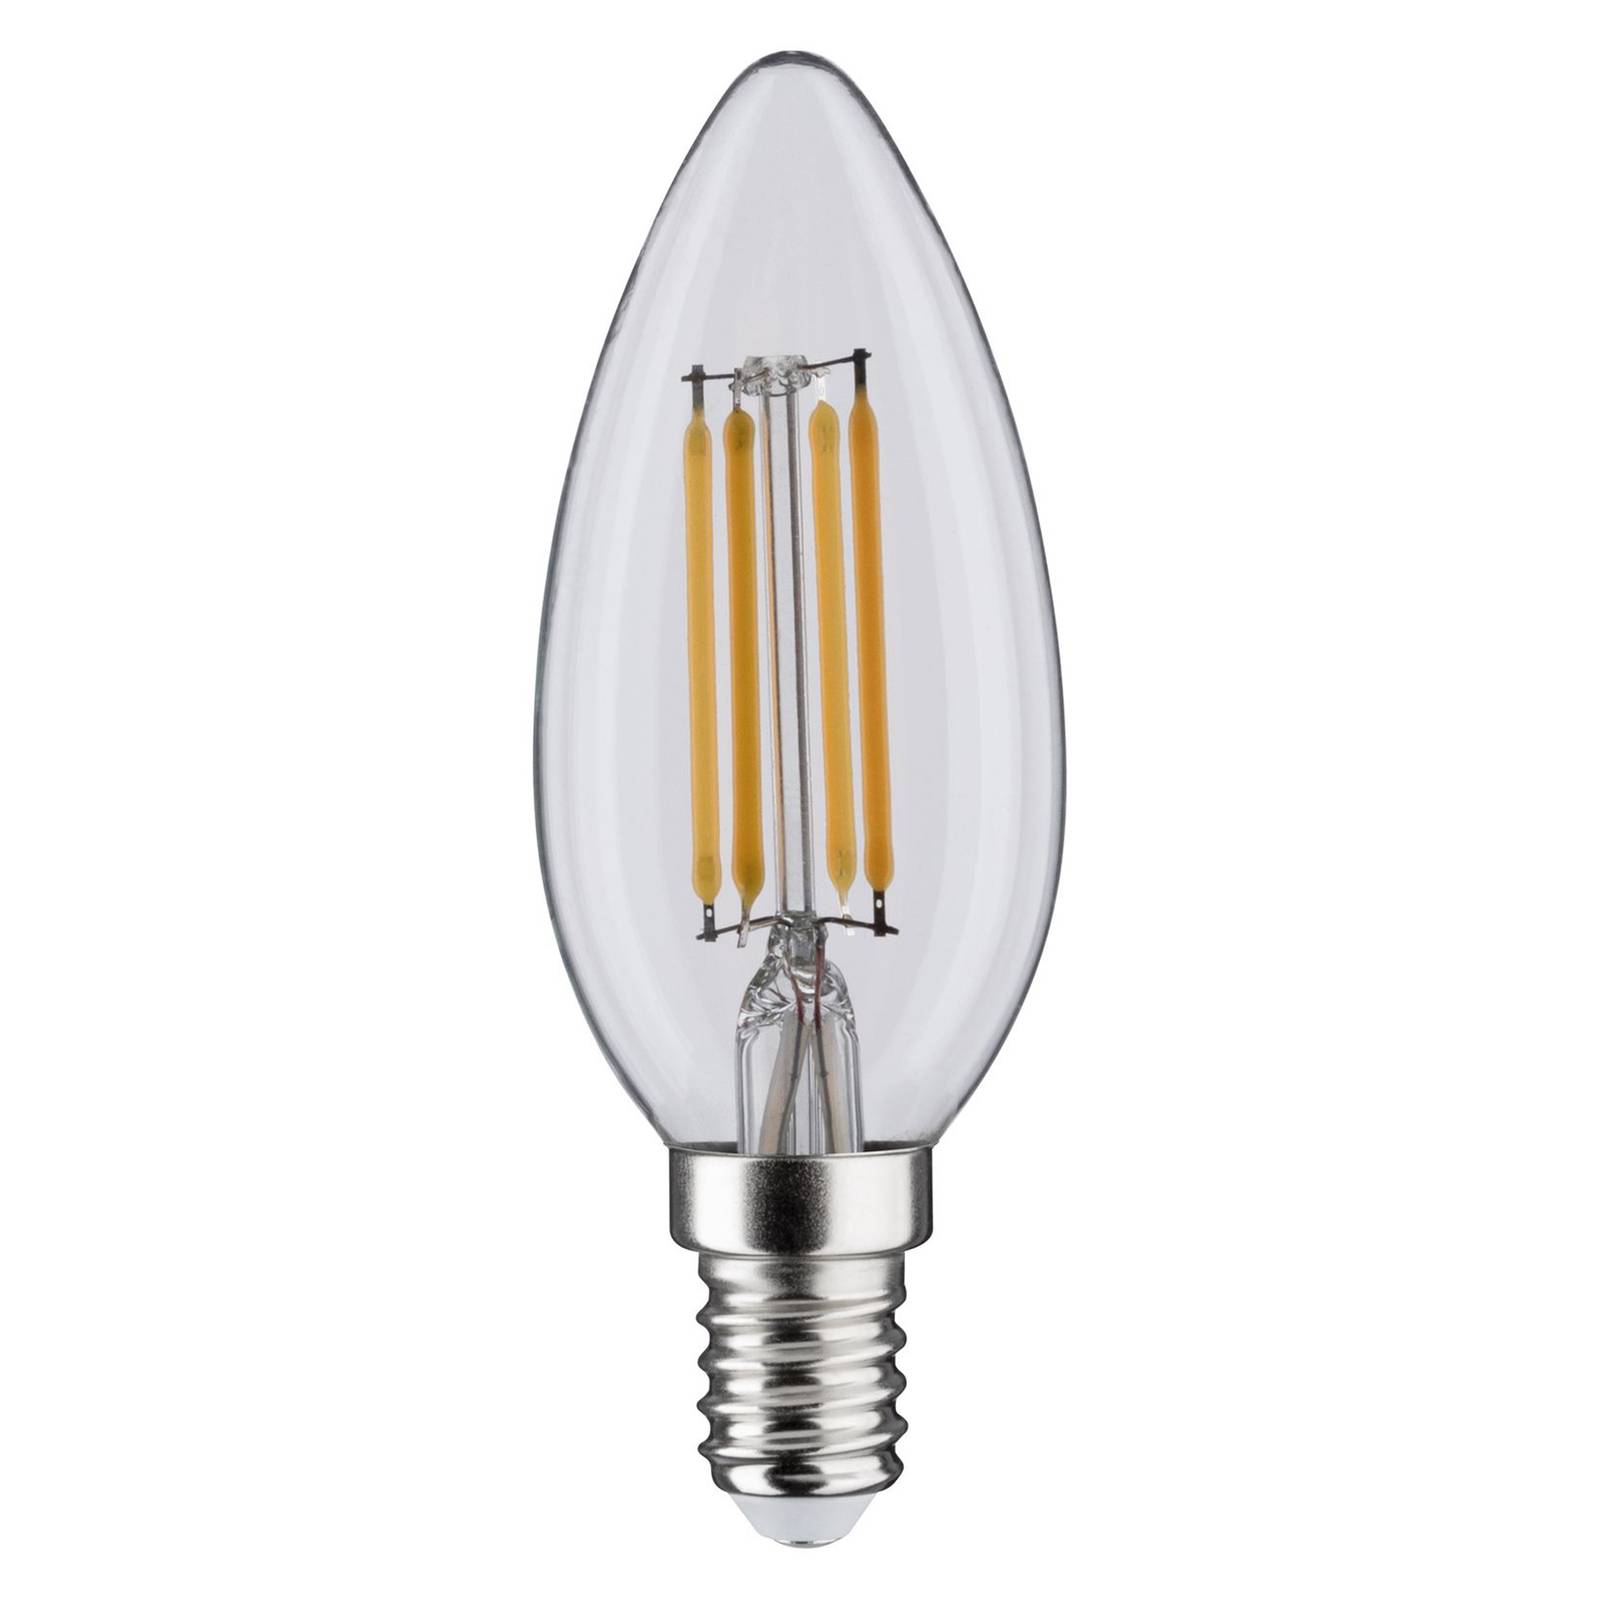 Paulmann bougie LED E14 5 W filament 3-step-dim